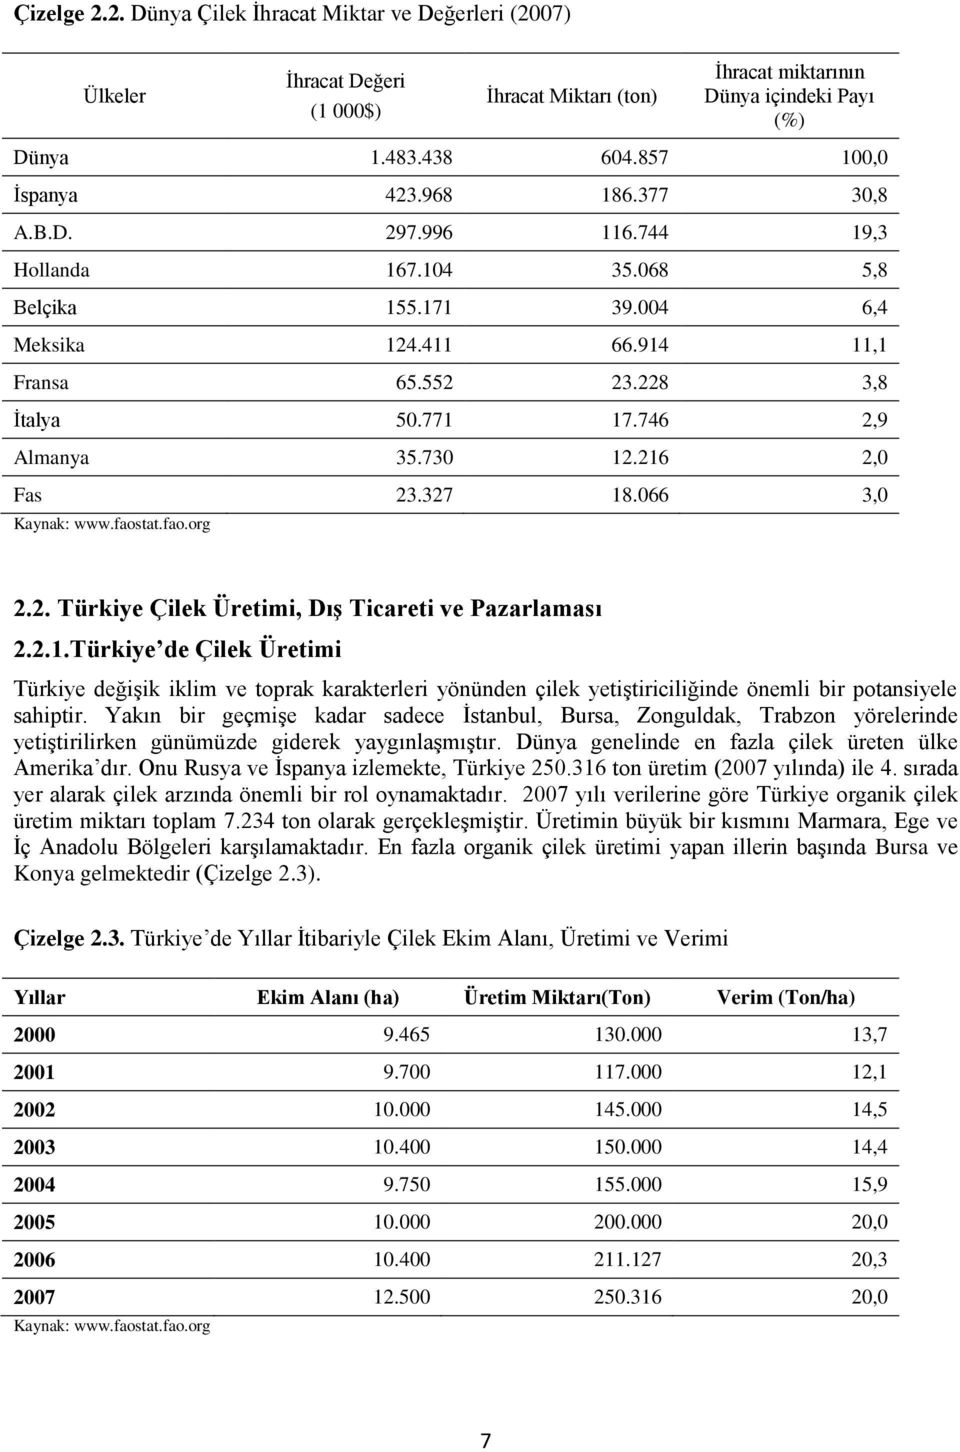 216 2,0 Fas 23.327 18.066 3,0 Kaynak: www.faostat.fao.org 2.2. Türkiye Çilek Üretimi, DıĢ Ticareti ve Pazarlaması 2.2.1.Türkiye de Çilek Üretimi Türkiye değiģik iklim ve toprak karakterleri yönünden çilek yetiģtiriciliğinde önemli bir potansiyele sahiptir.